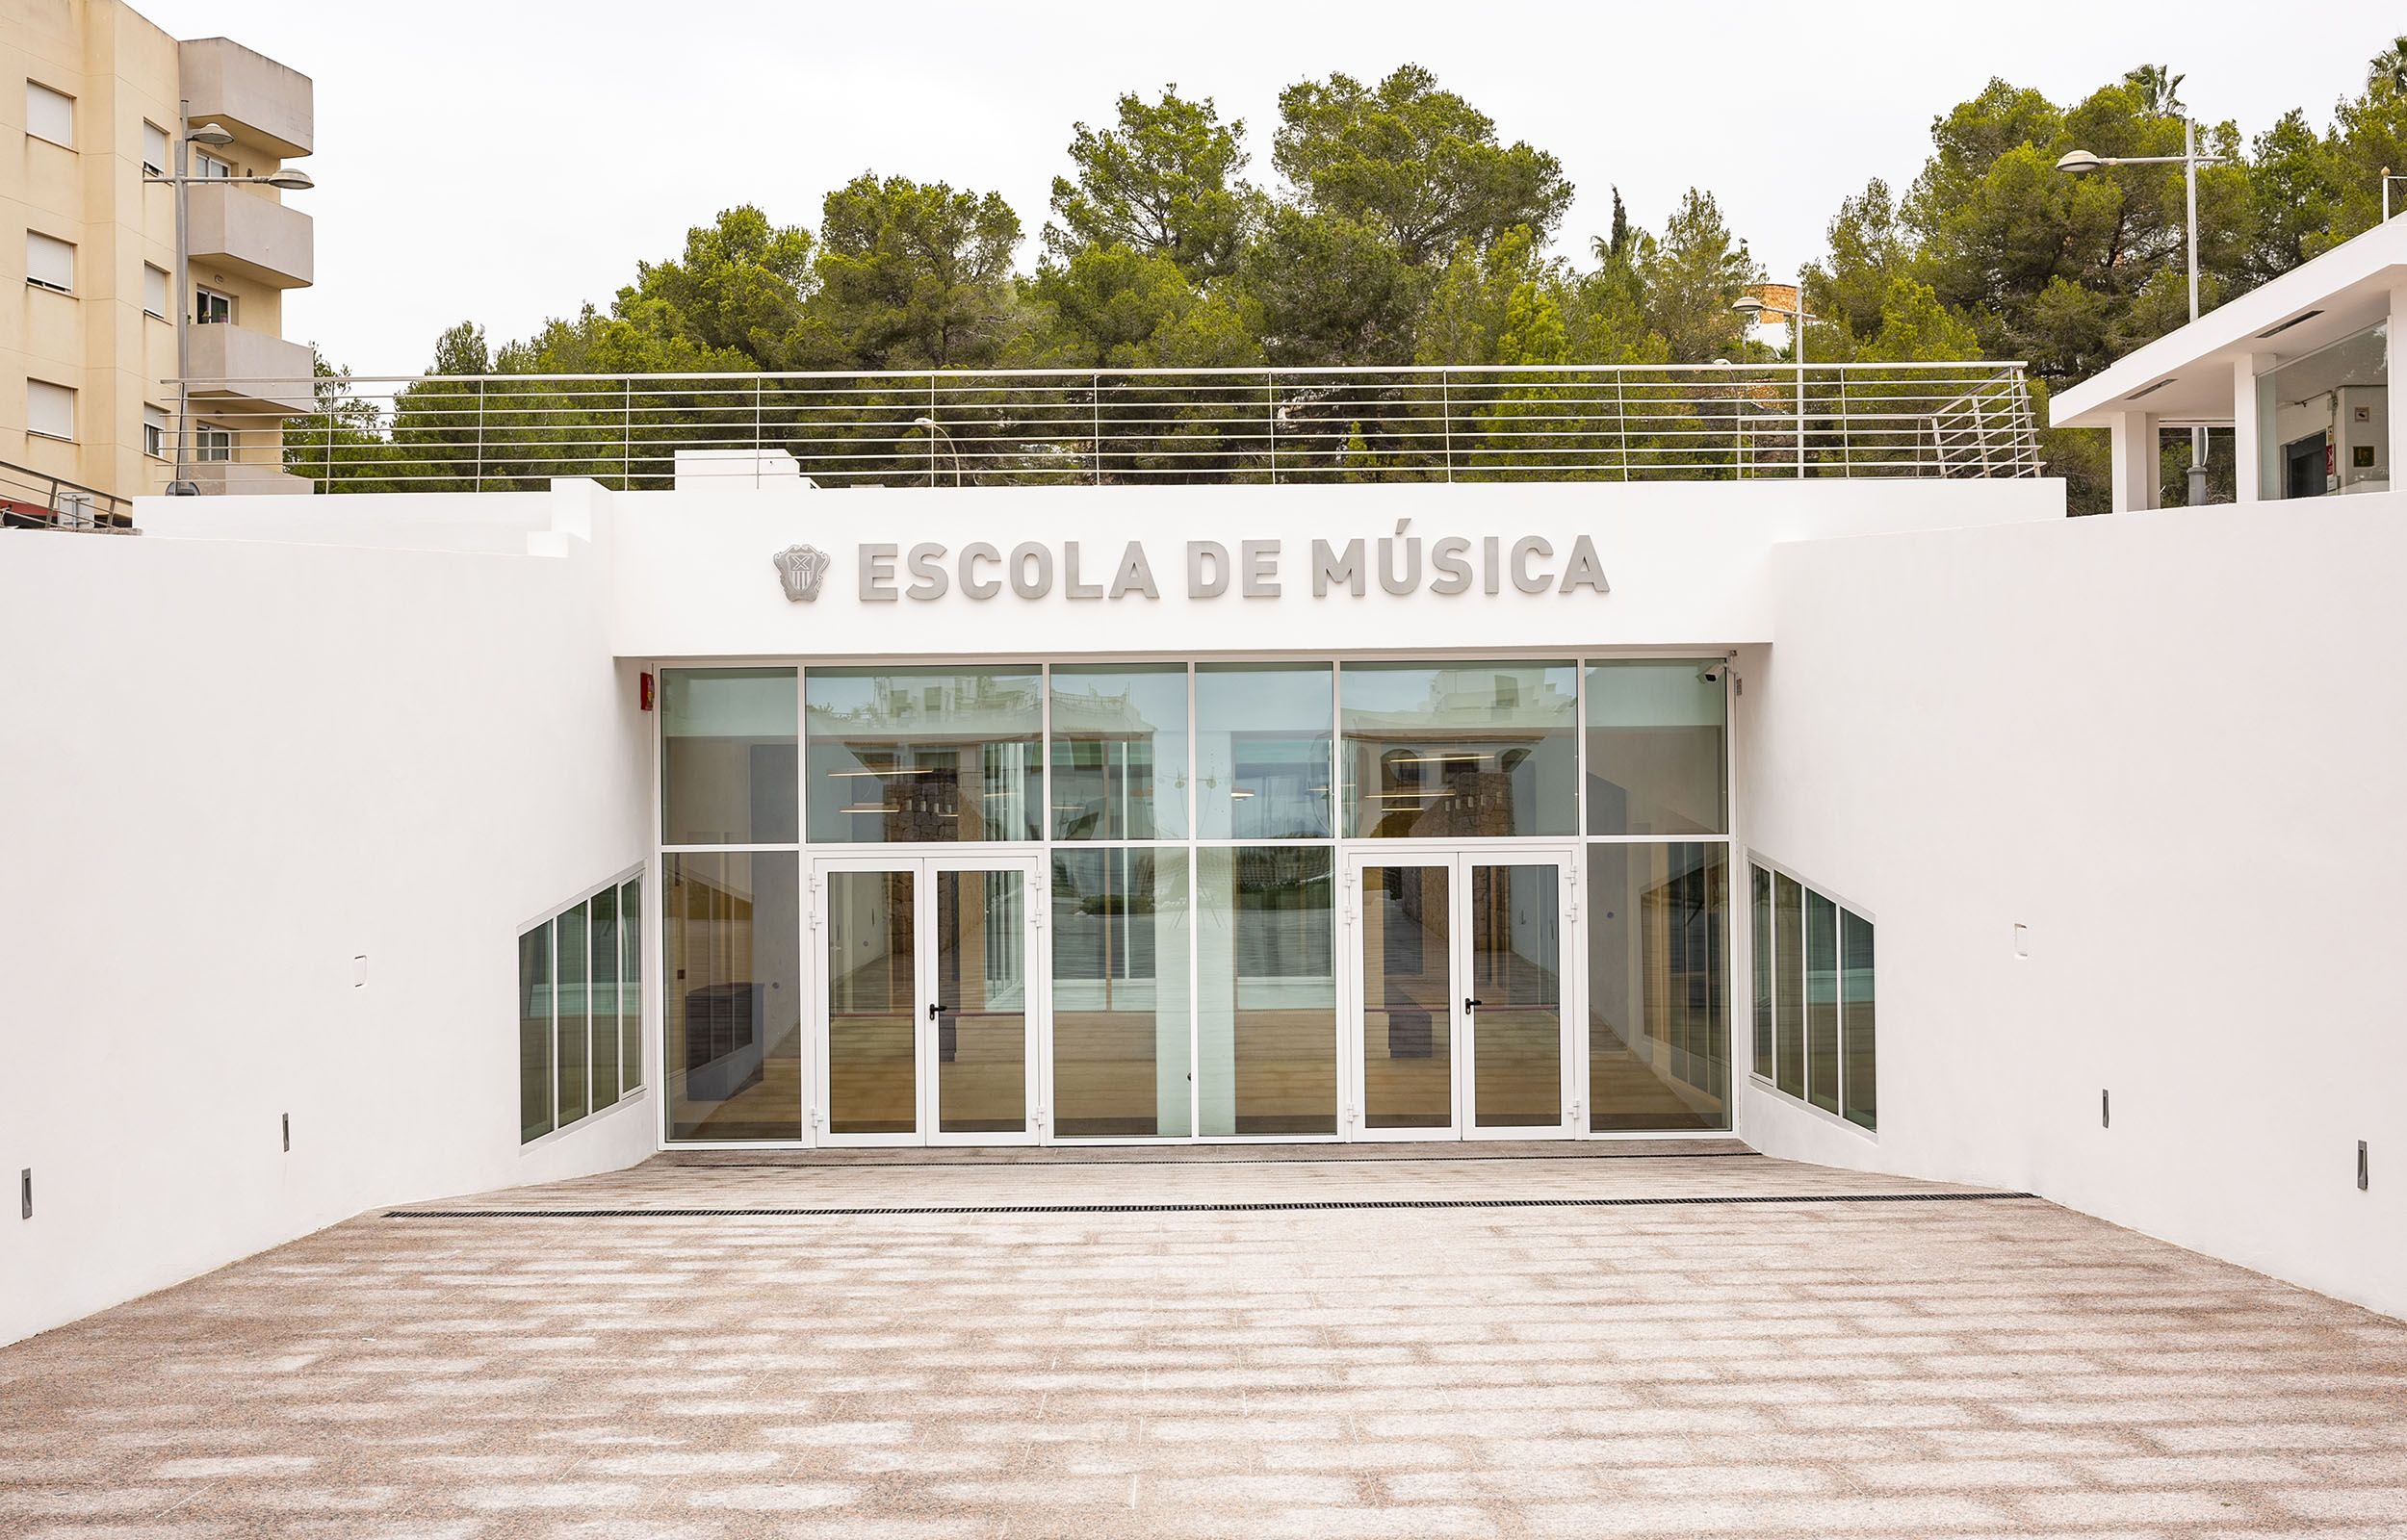 Escuela de Música - Ajuntament de Santa Eularia des Riu